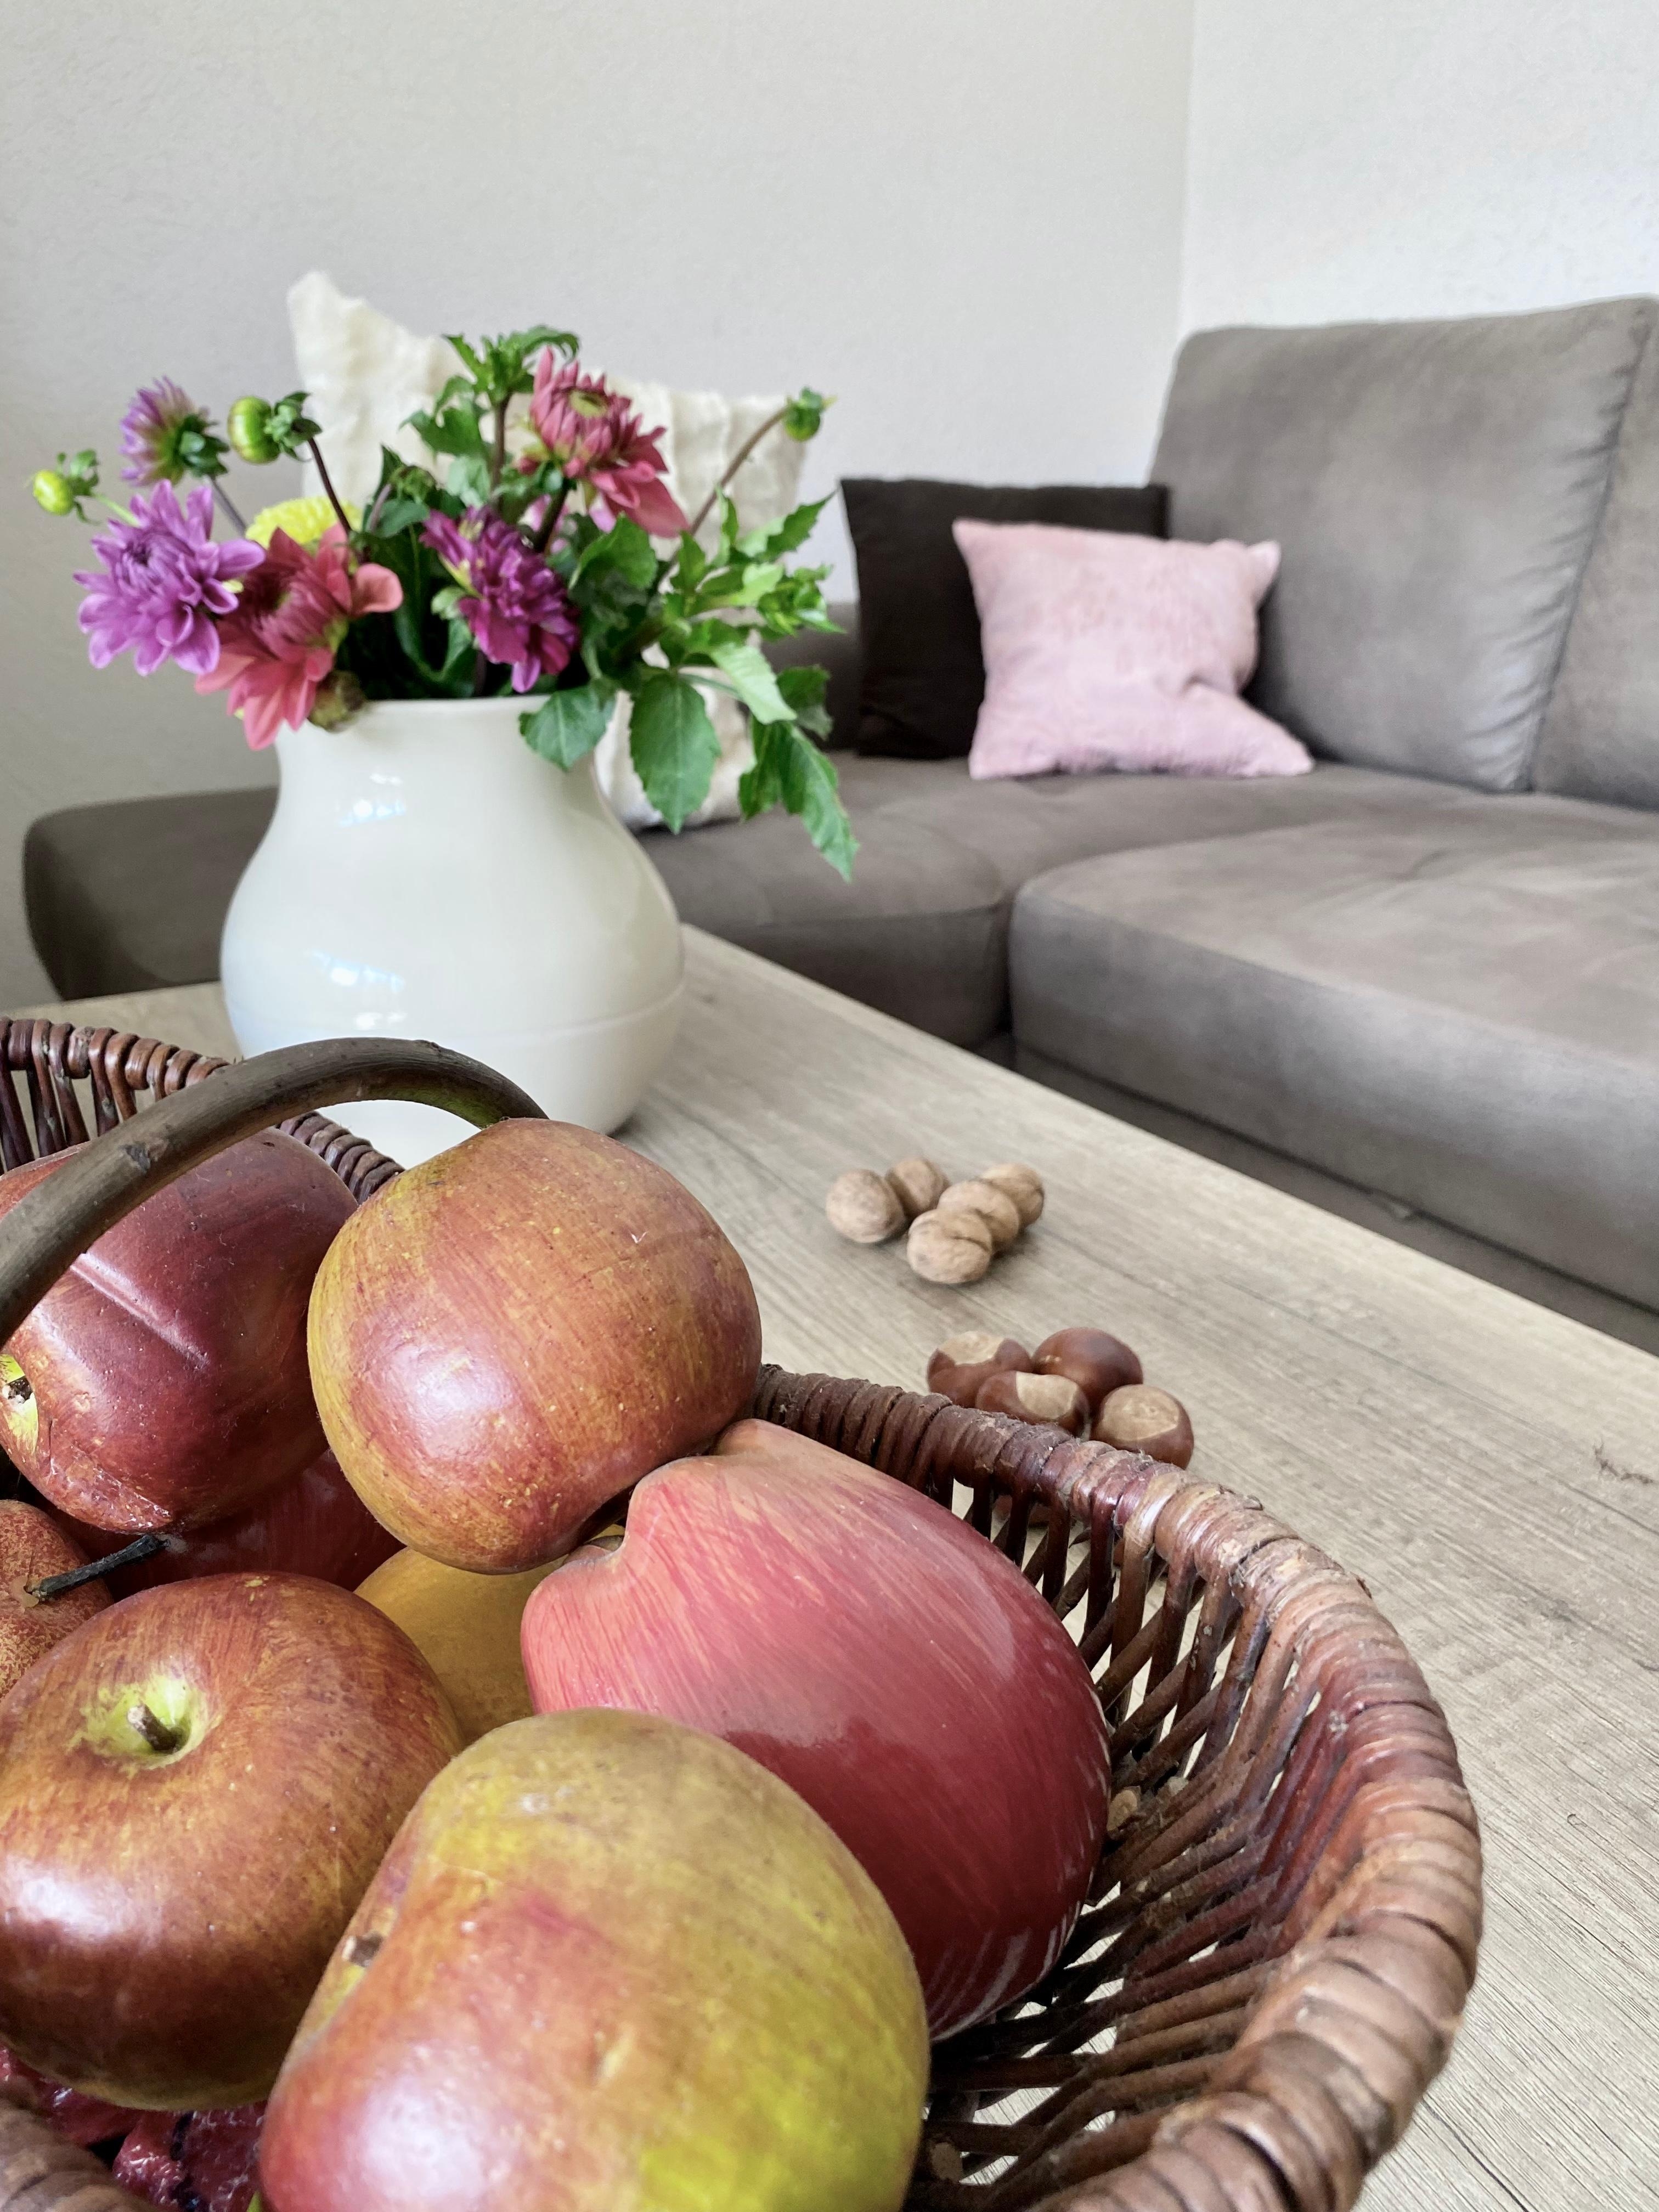 Dahlien, Astern, Äpfel, Nüsse und Kastanien für die beginnende kältere Jahreszeit
#Herbst